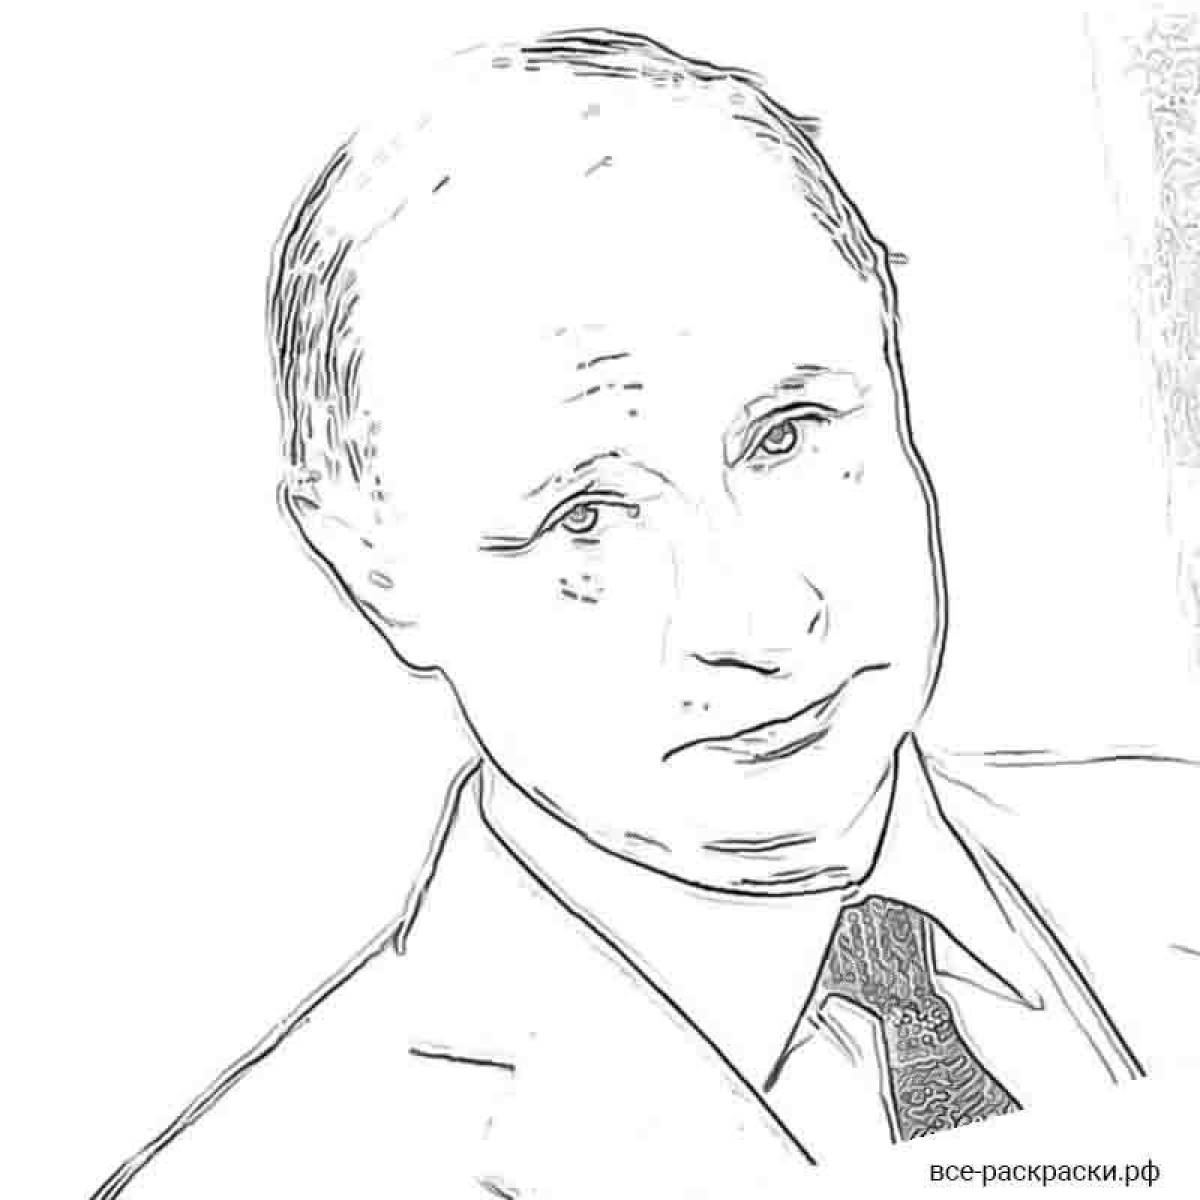 Putin's great coloring book